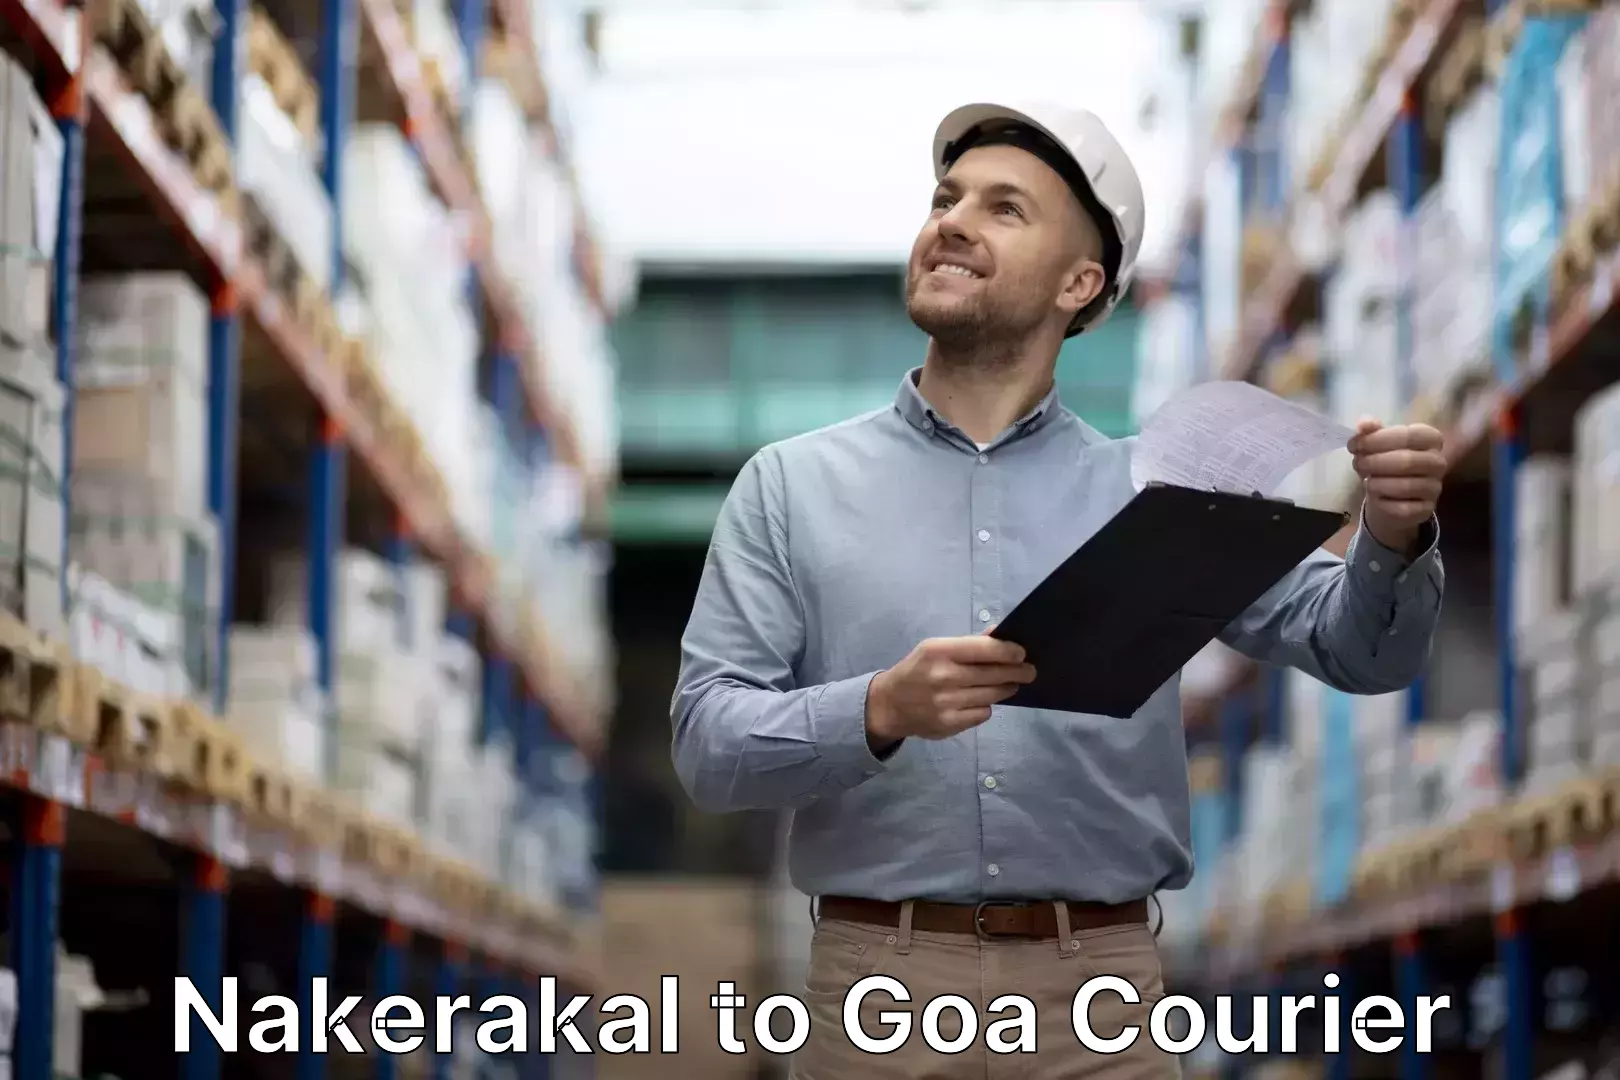 Urgent luggage shipment Nakerakal to South Goa